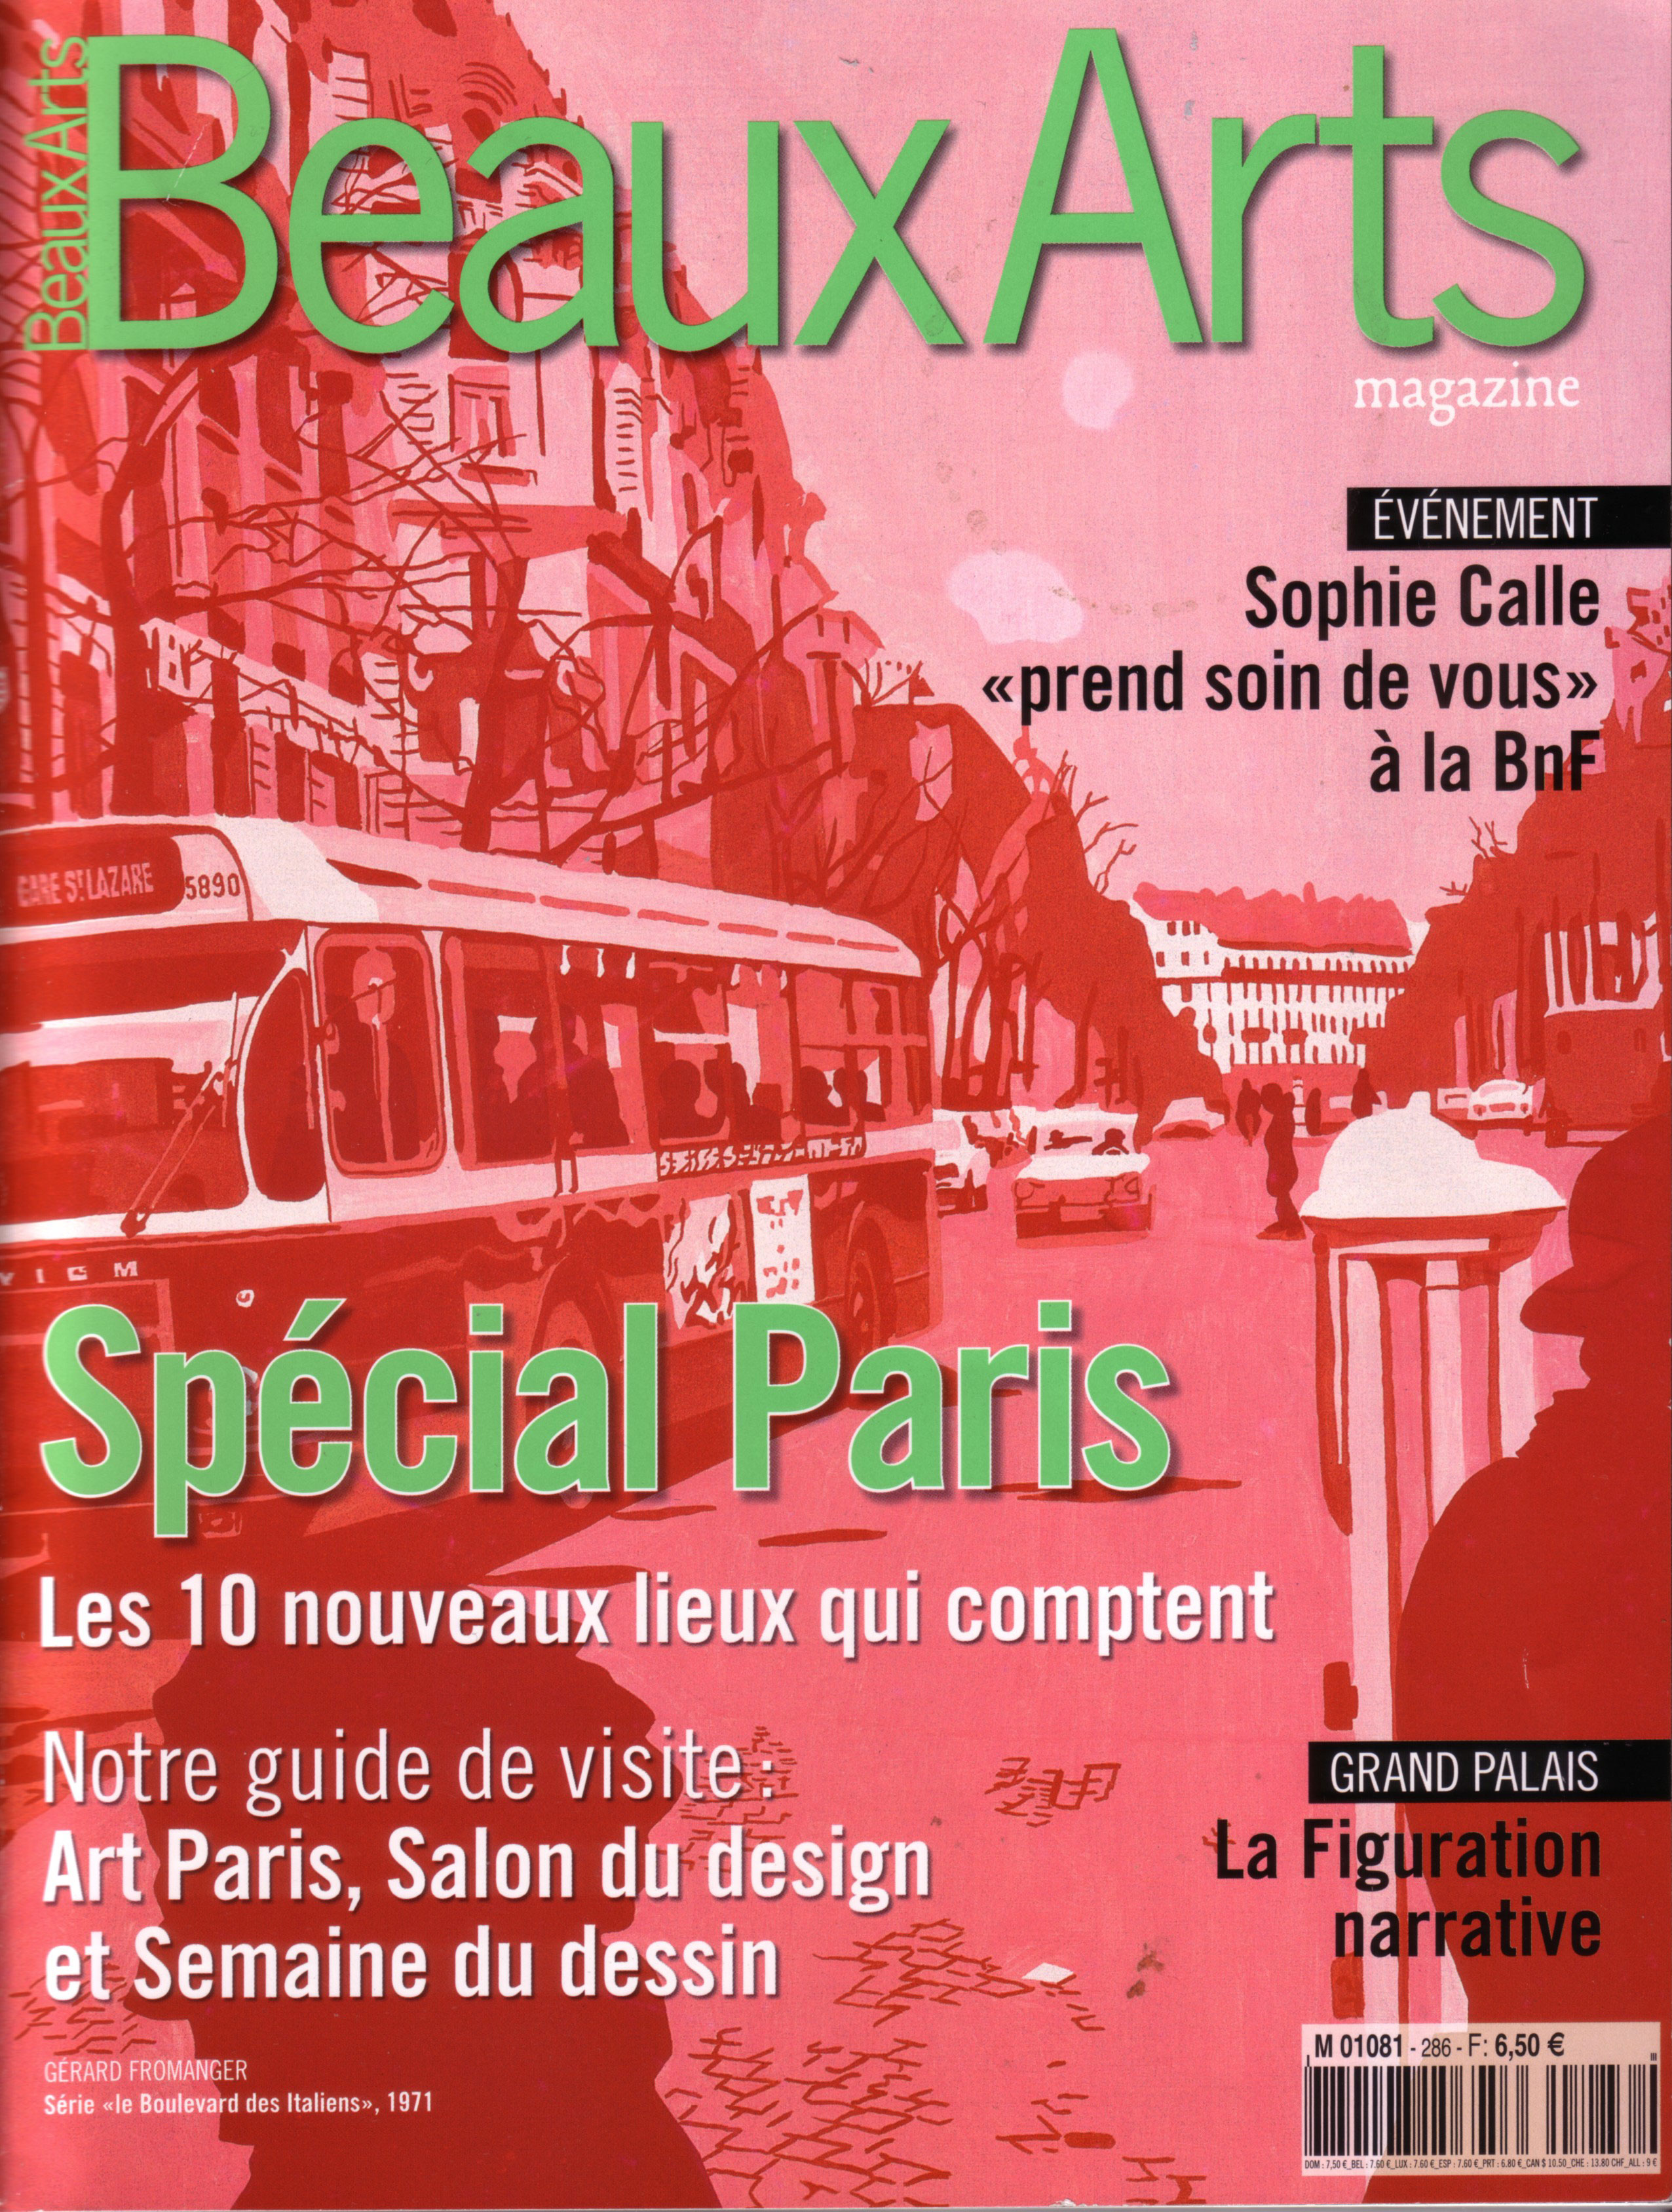 Special Paris - Les 10 nouveaux lieux qui comptent